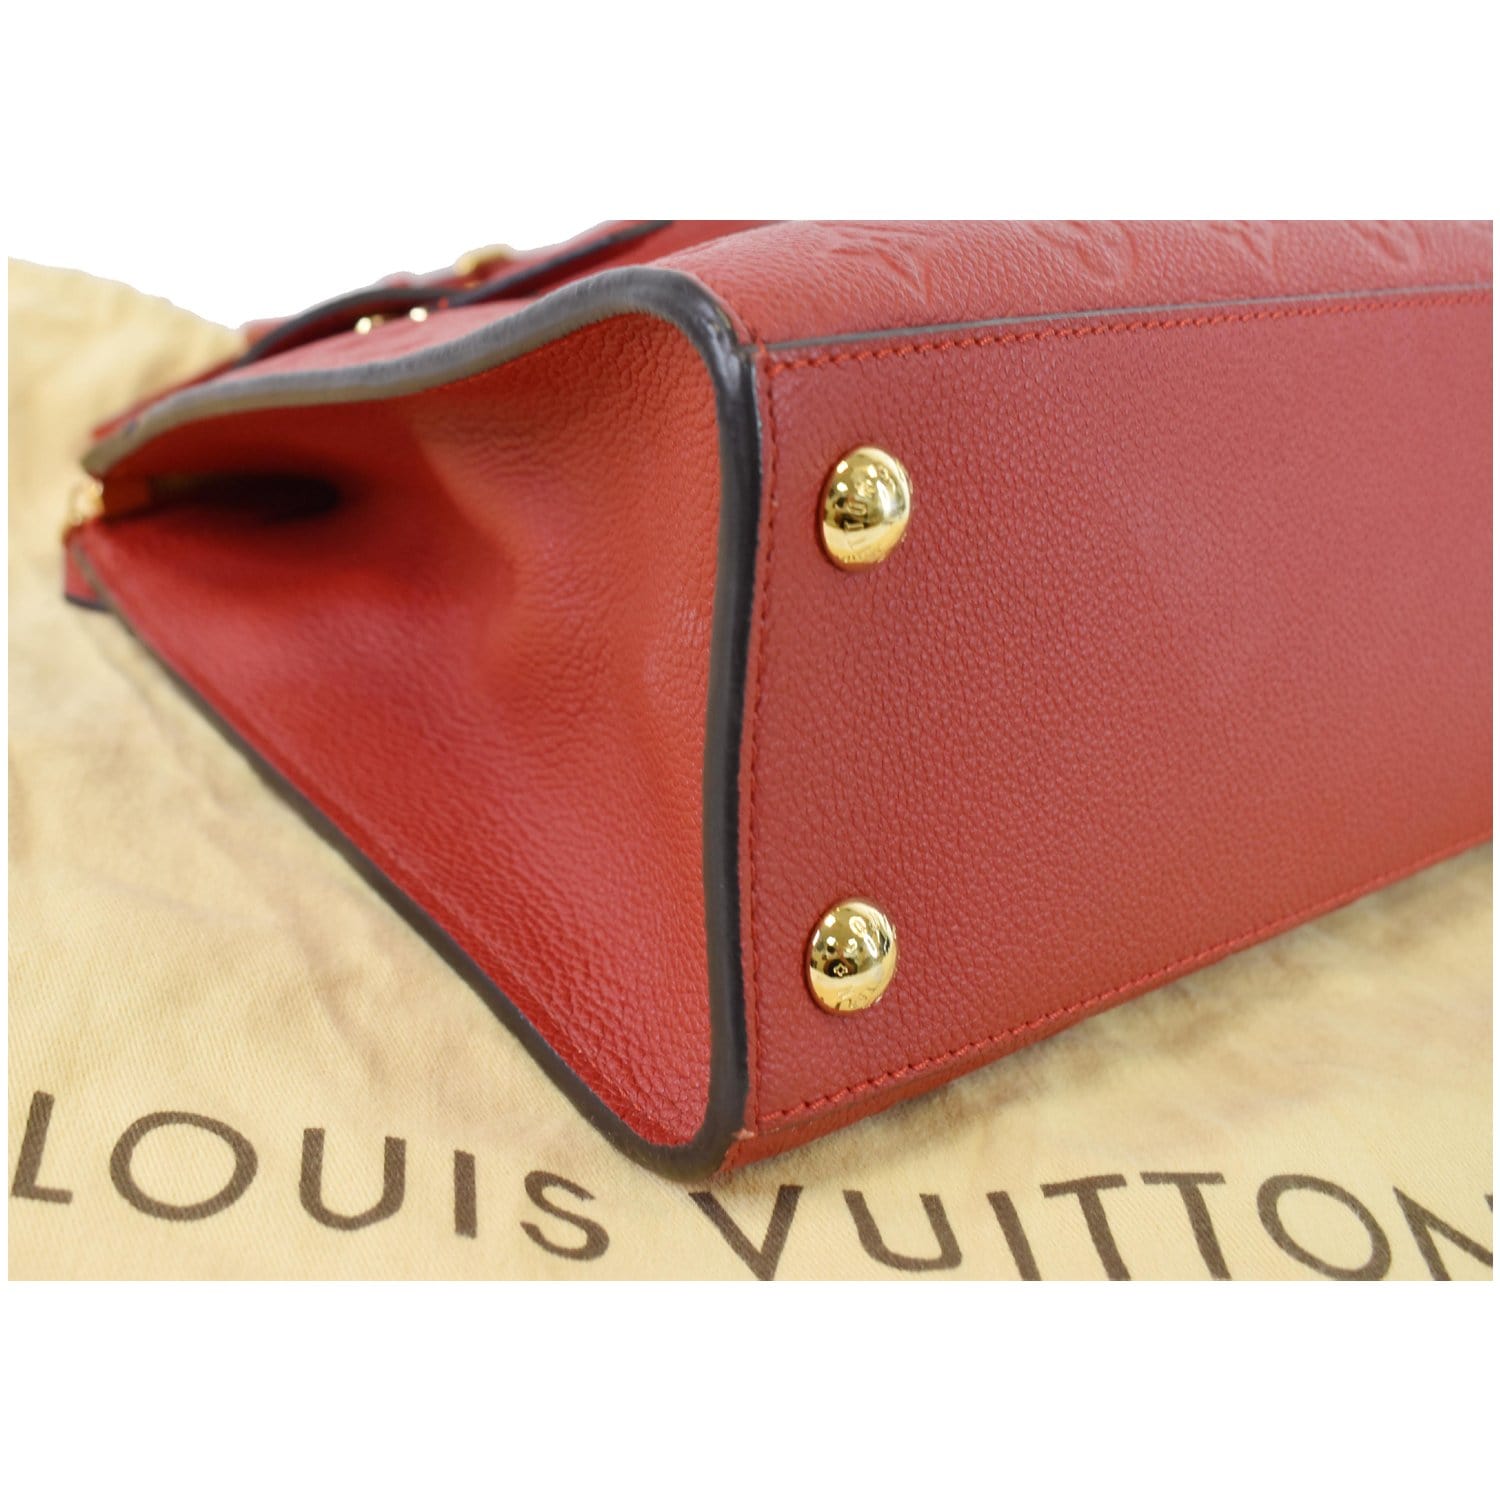 Louis Vuitton Pont-Neuf Wallet in monogram Empreinte Leather in Marine –  Apalboutique